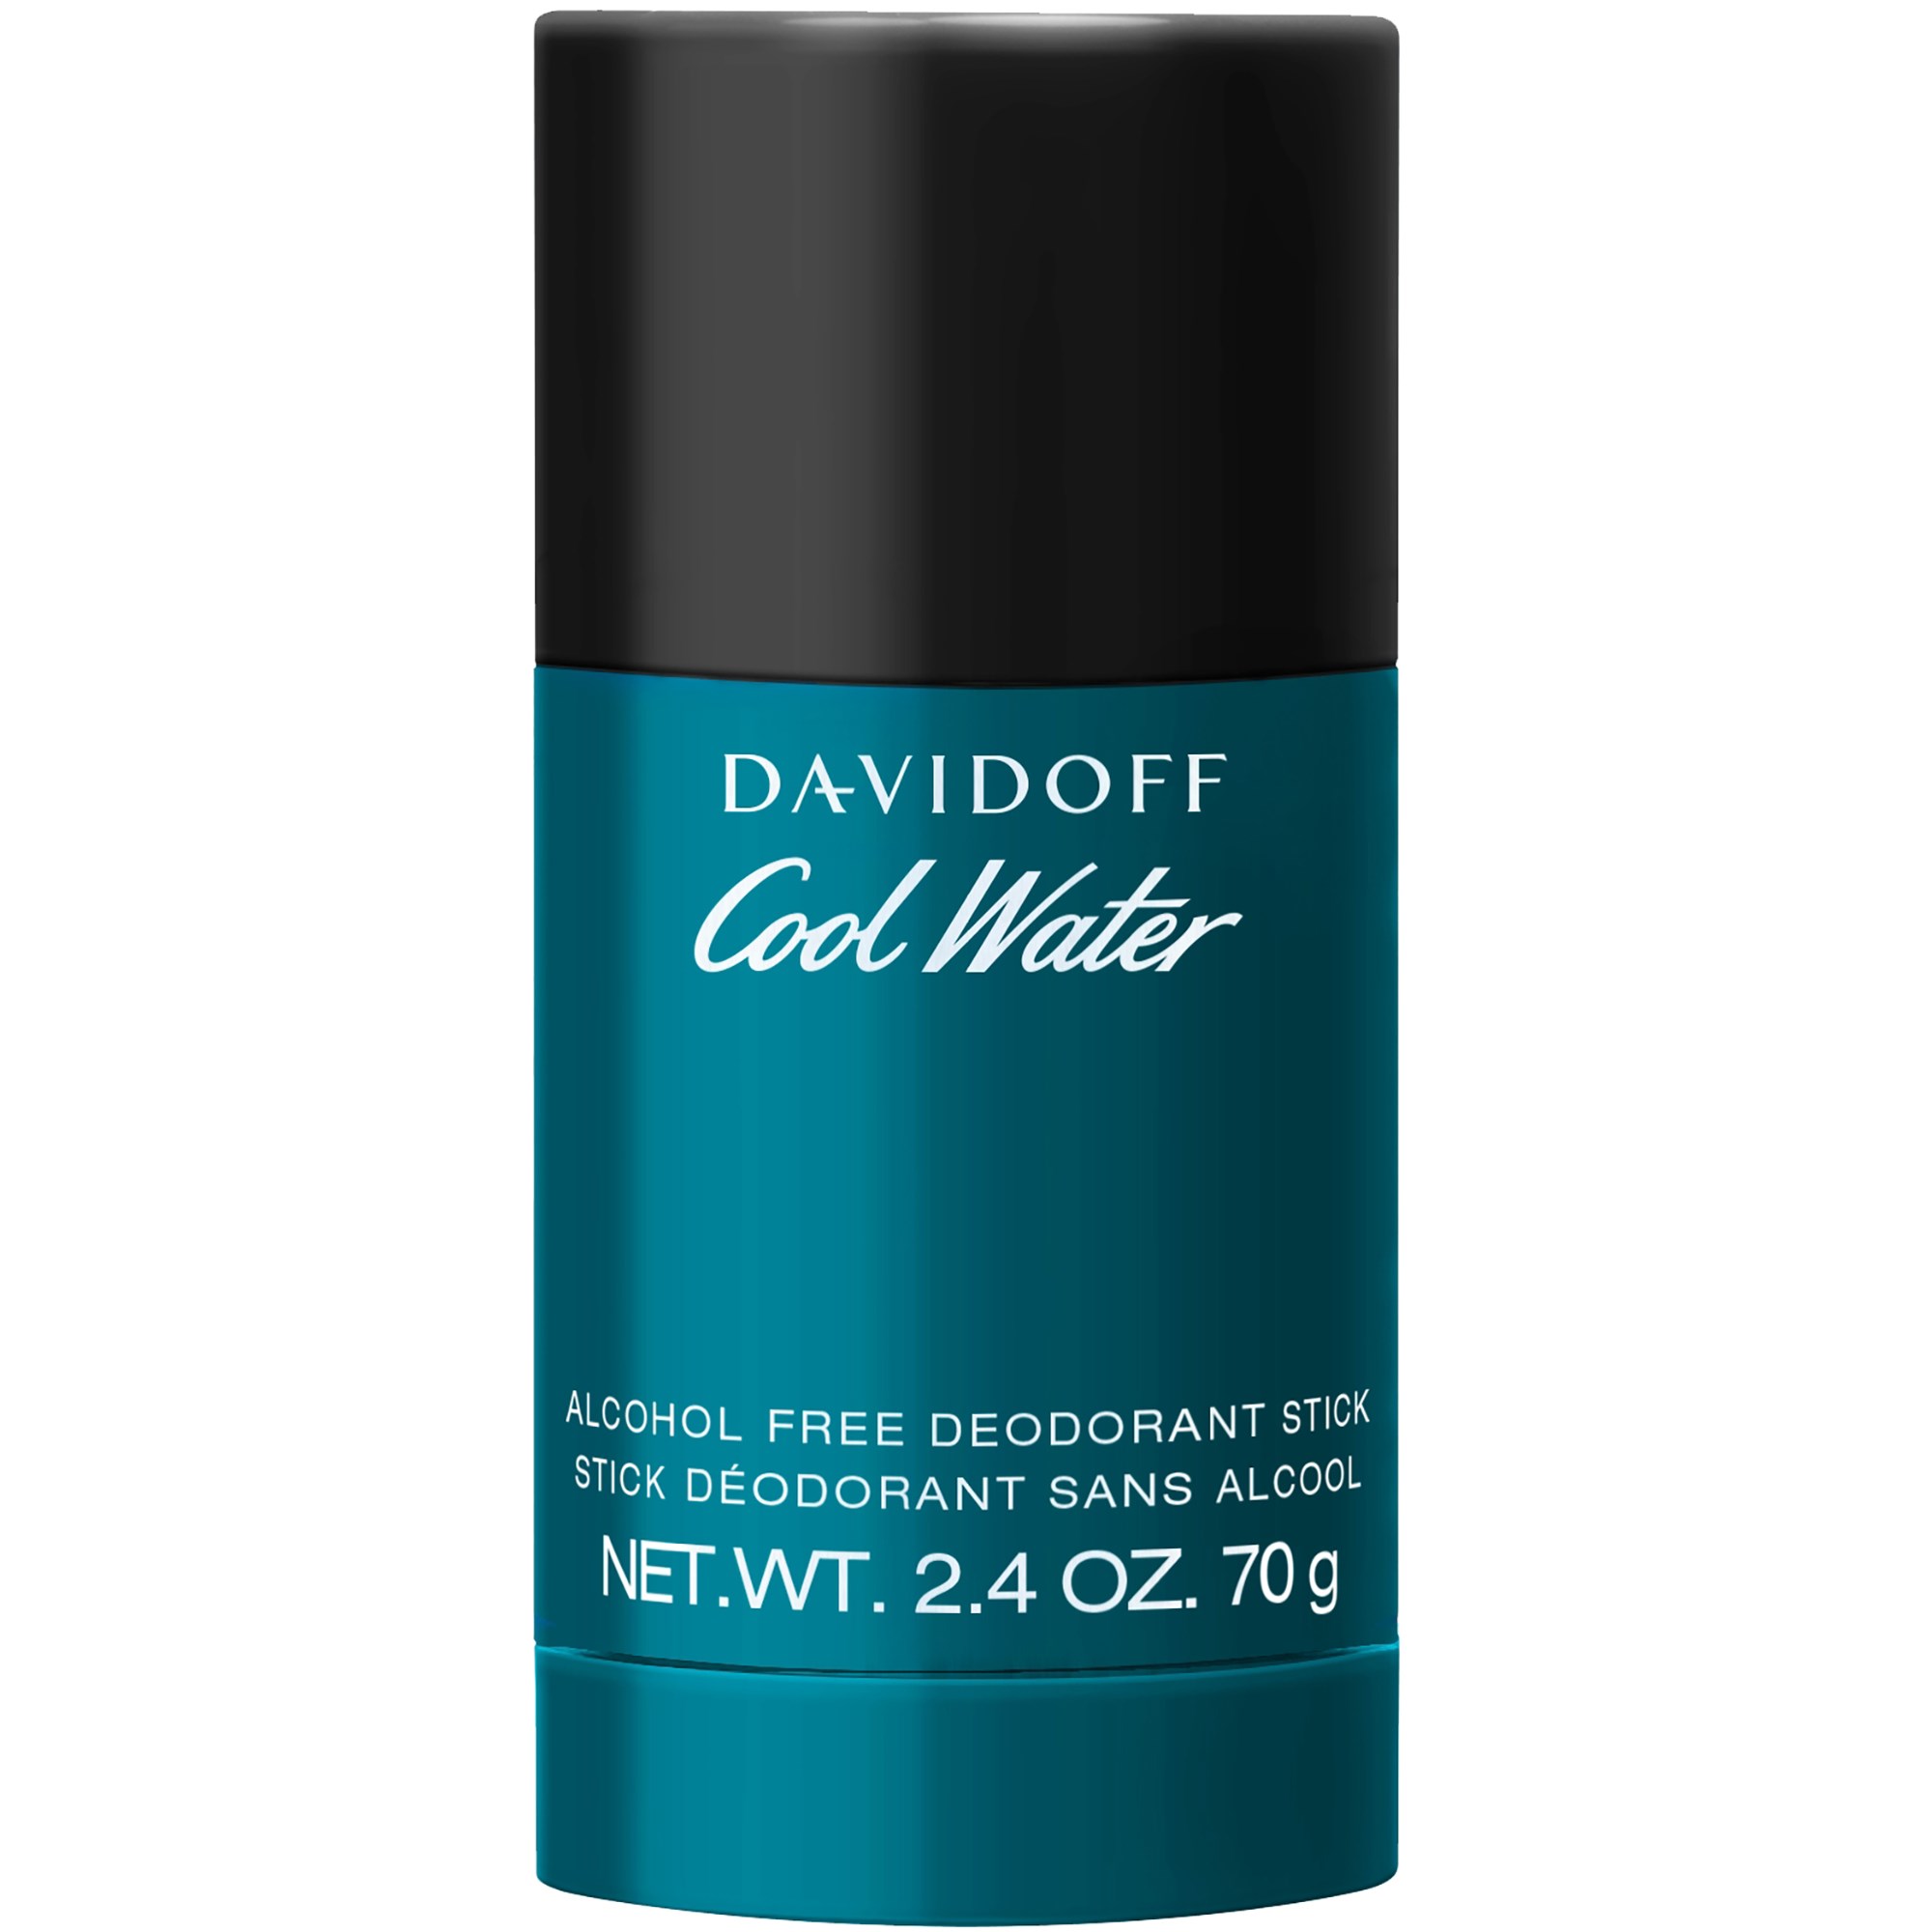 Davidoff Cool Water Man Deostick 75ml